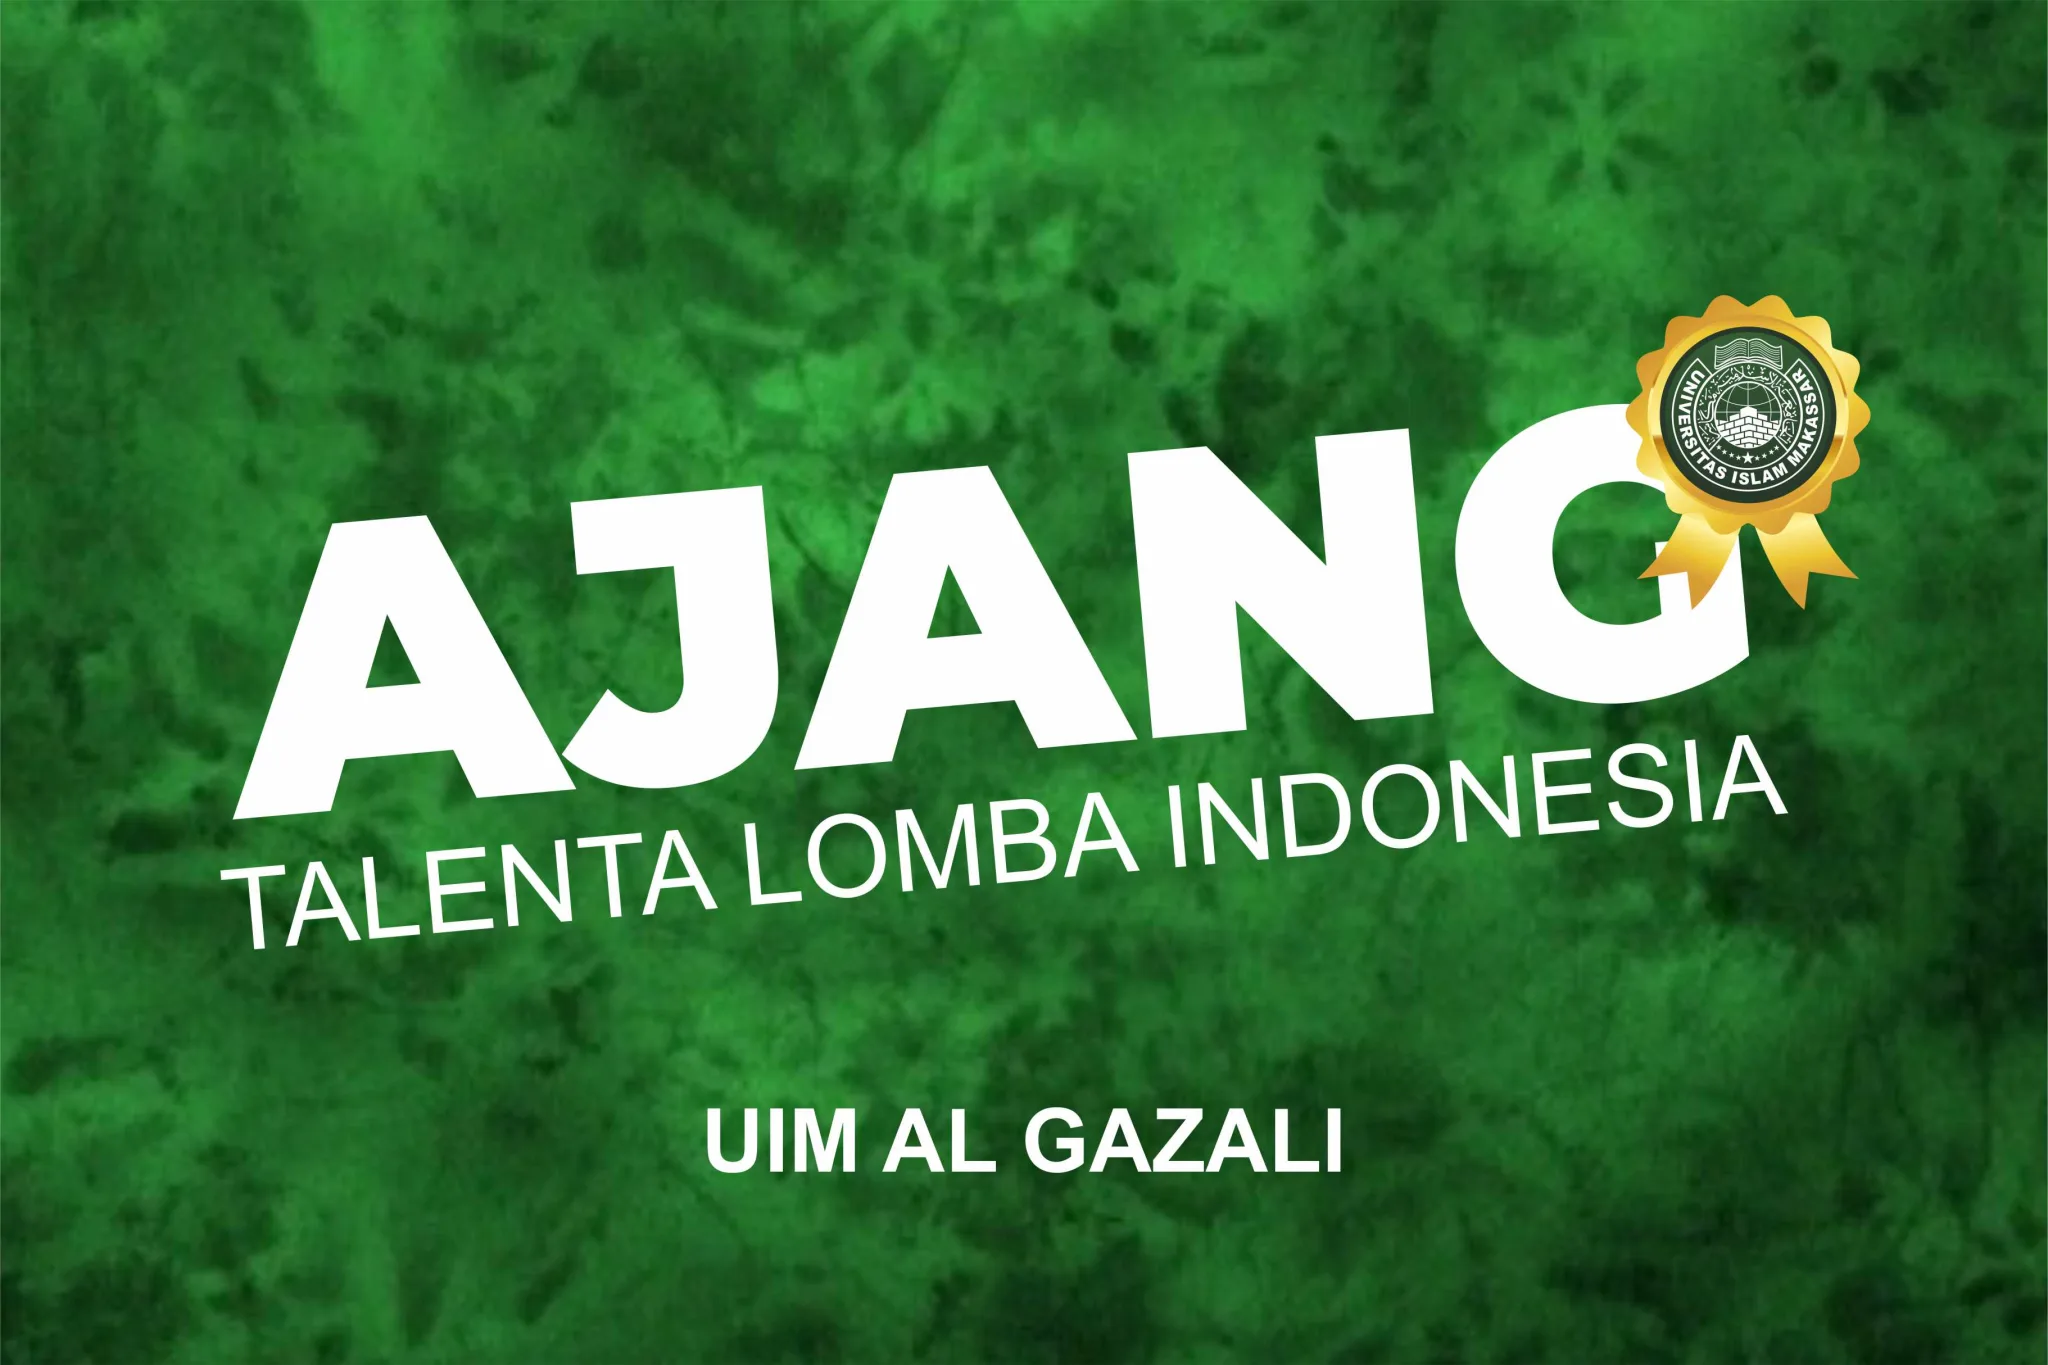 UIM Buka Ajang Talenta Lomba Indonesia, Ini Daftarnya